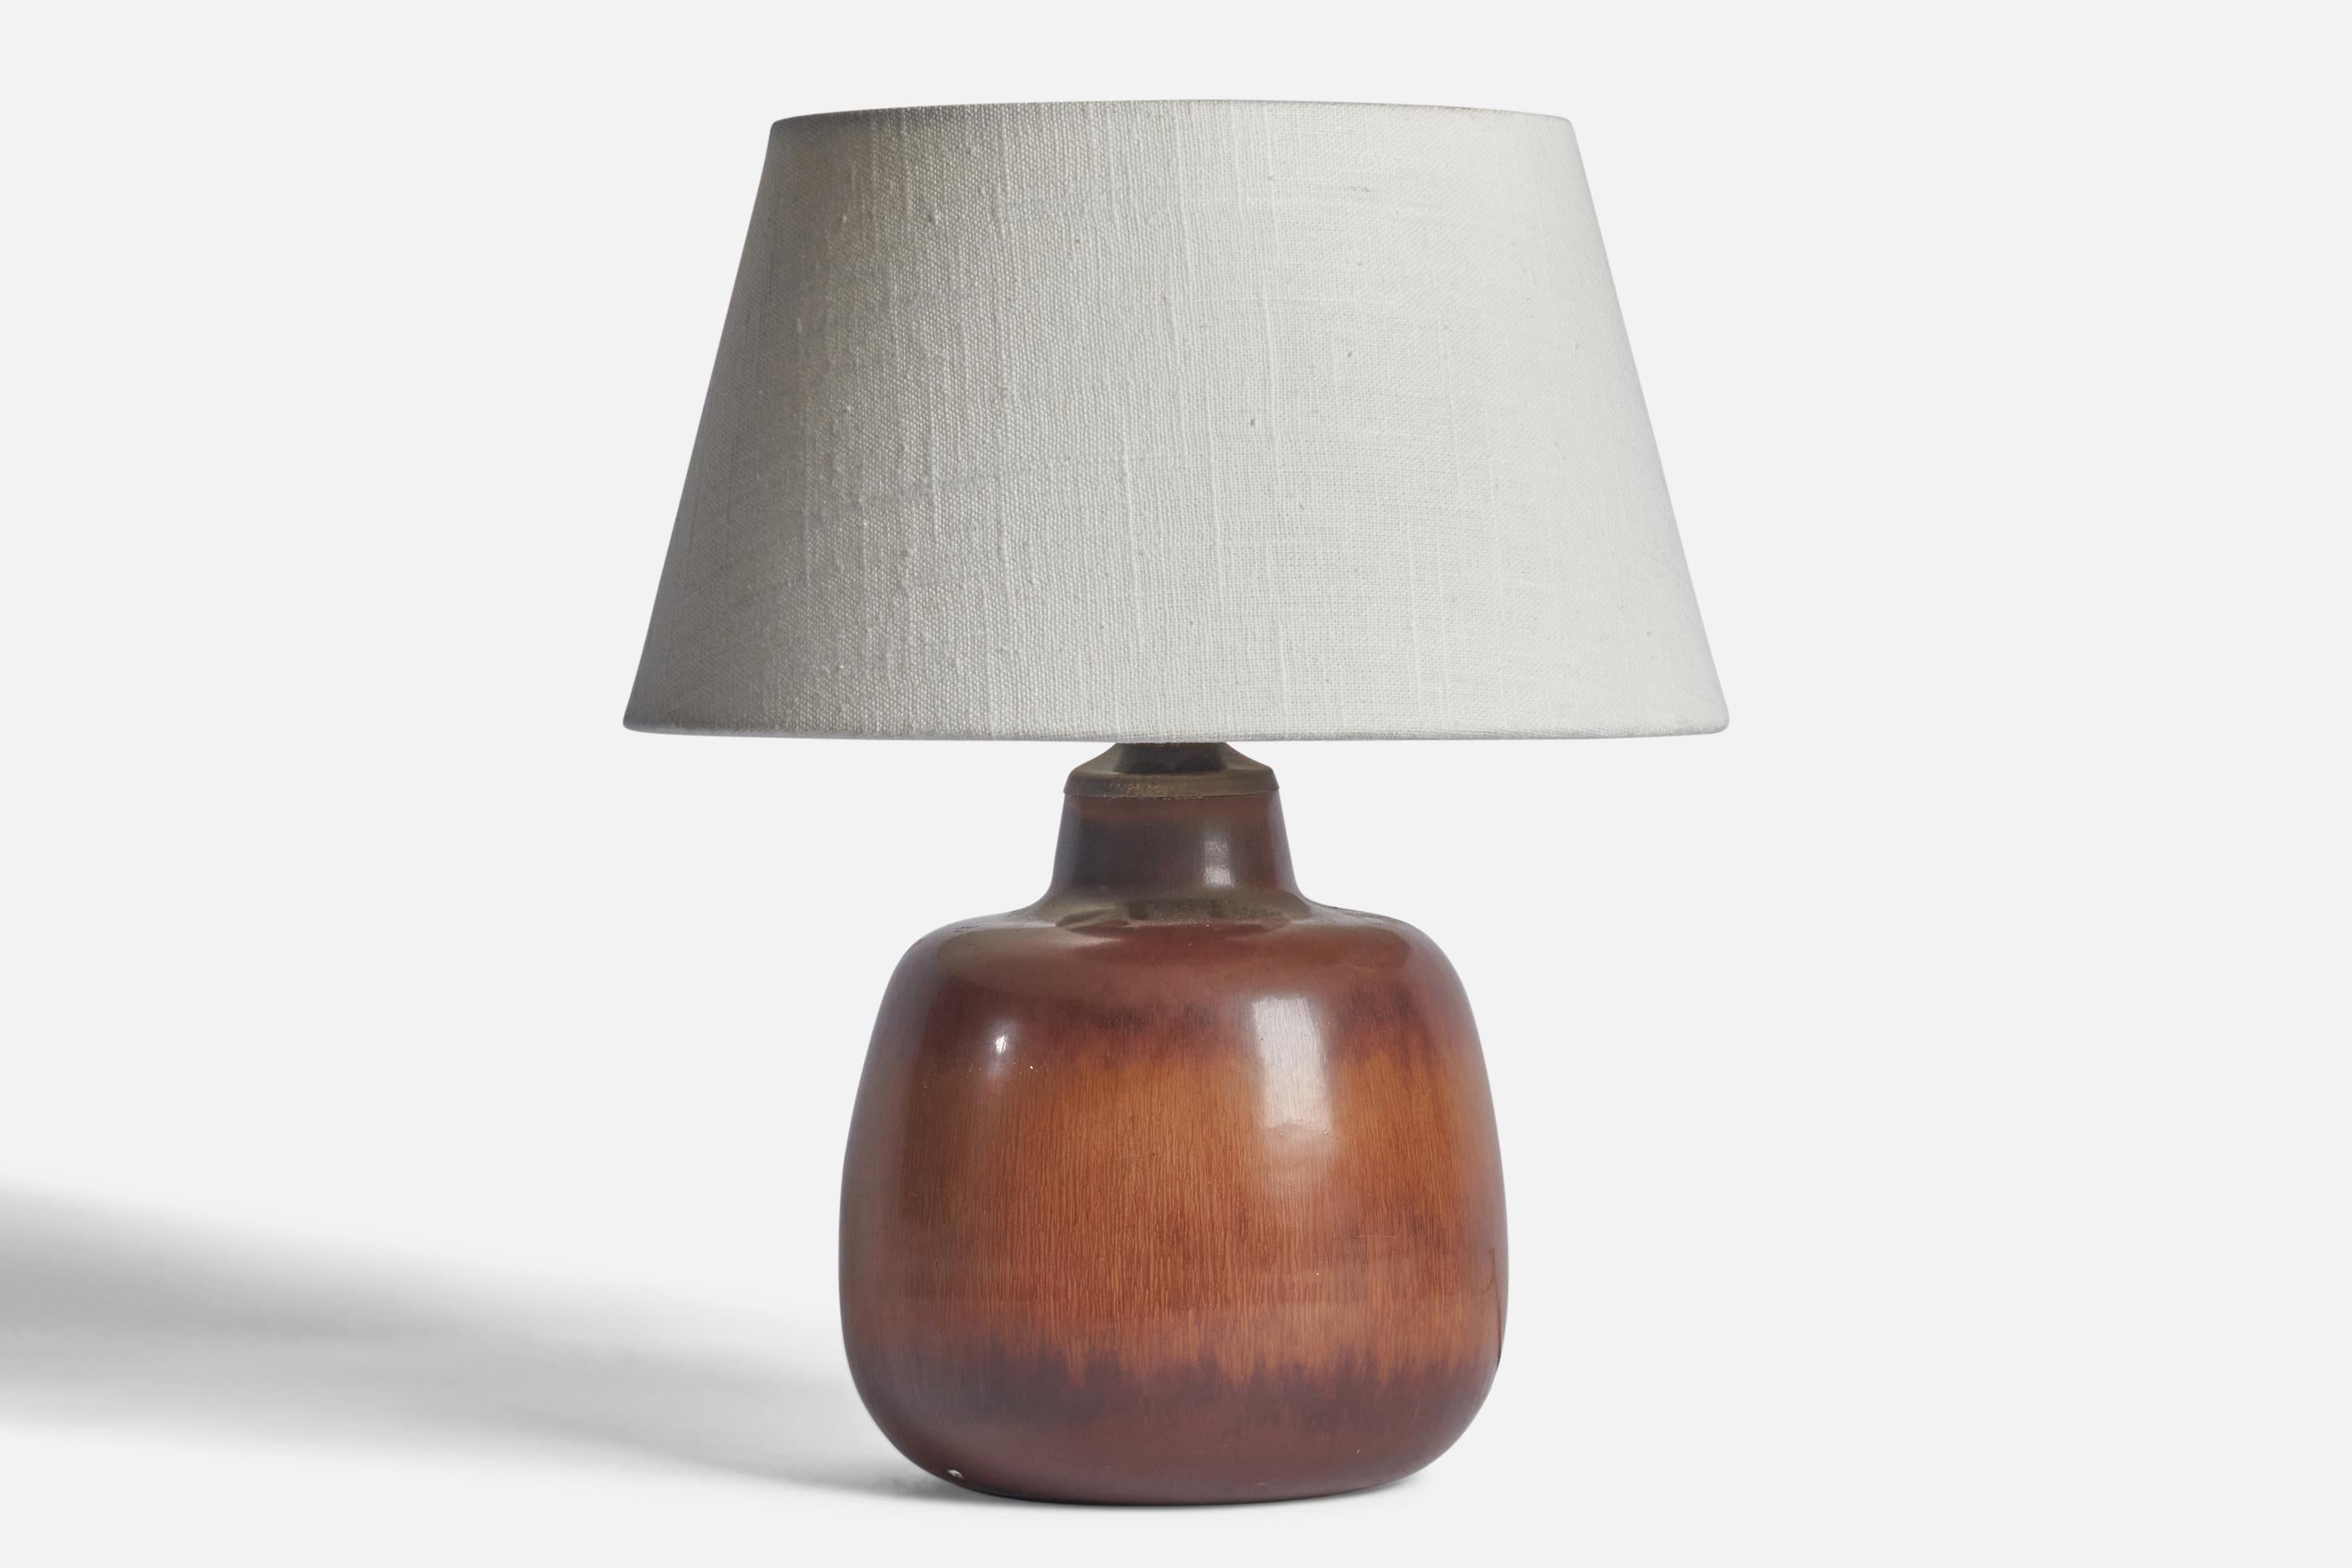 Lampe de table en grès émaillé brun, conçue par Carl-Harry Stålhane et produite par Rörstrand, Suède, années 1950.

Dimensions de la lampe (pouces) : 9.25